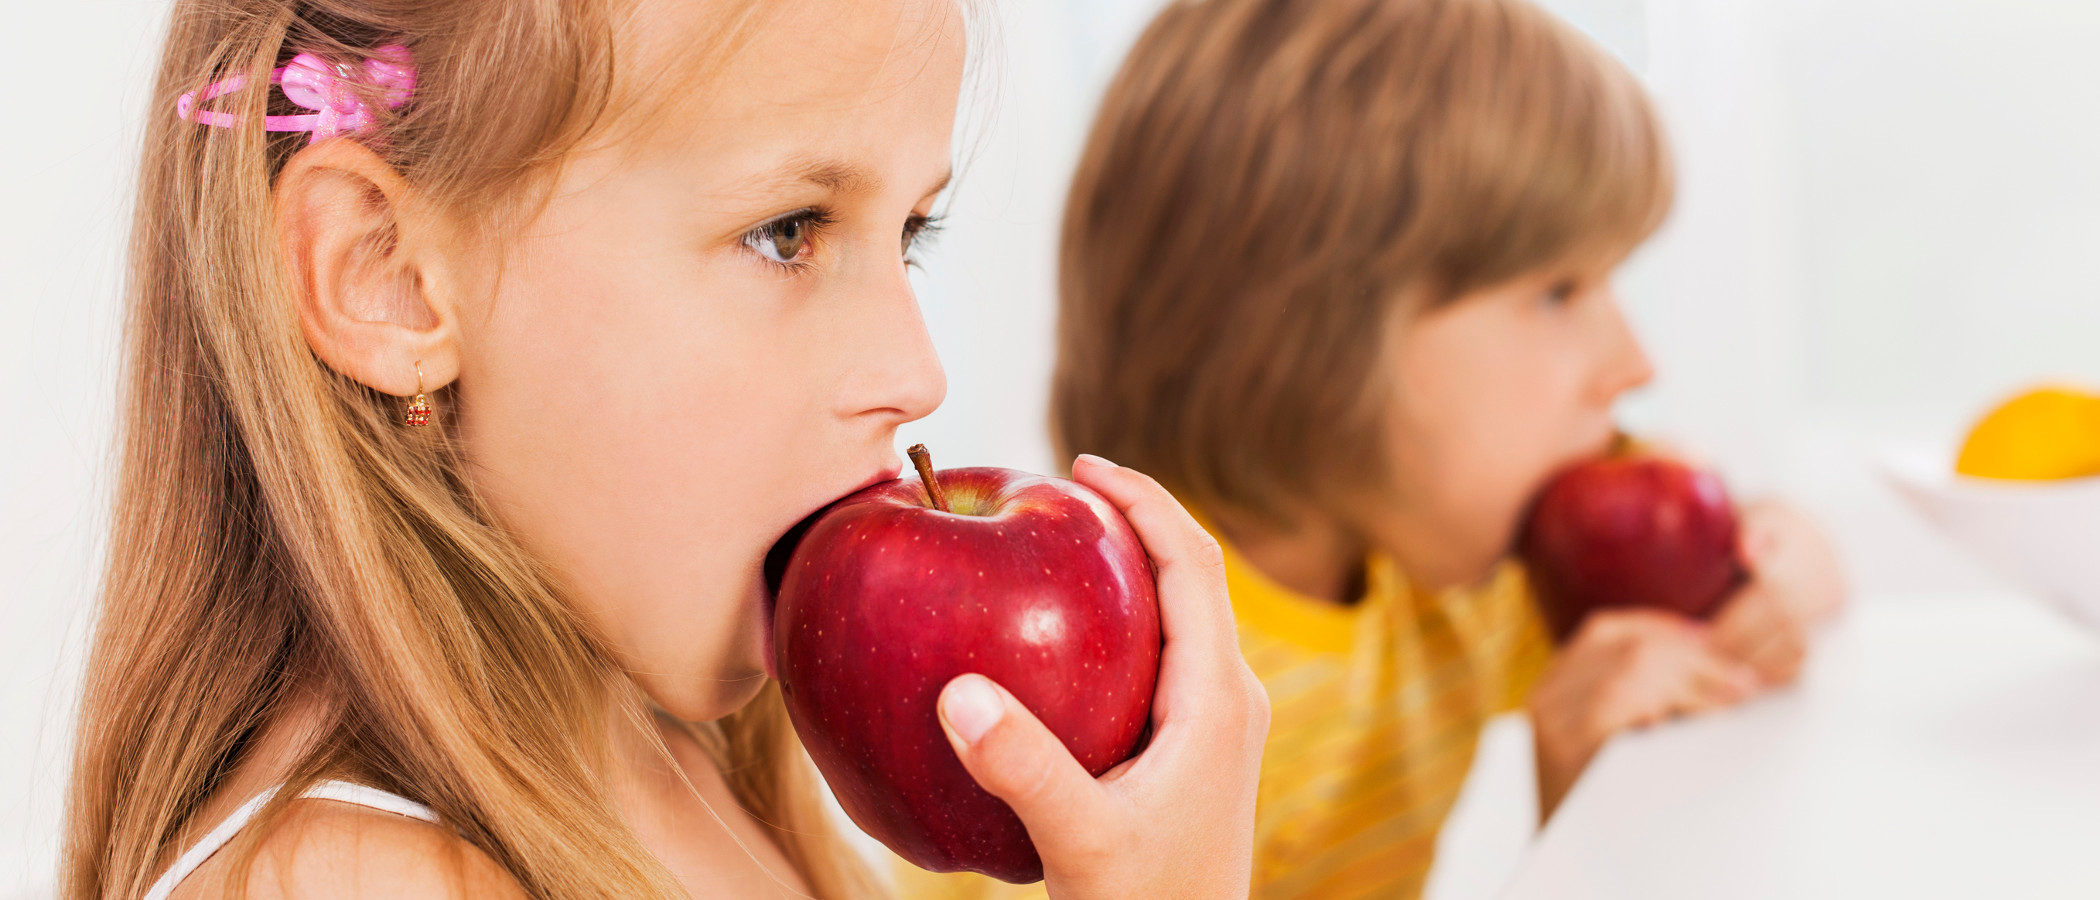 Cómo inculcar hábitos de vida saludable en nuestros hijos